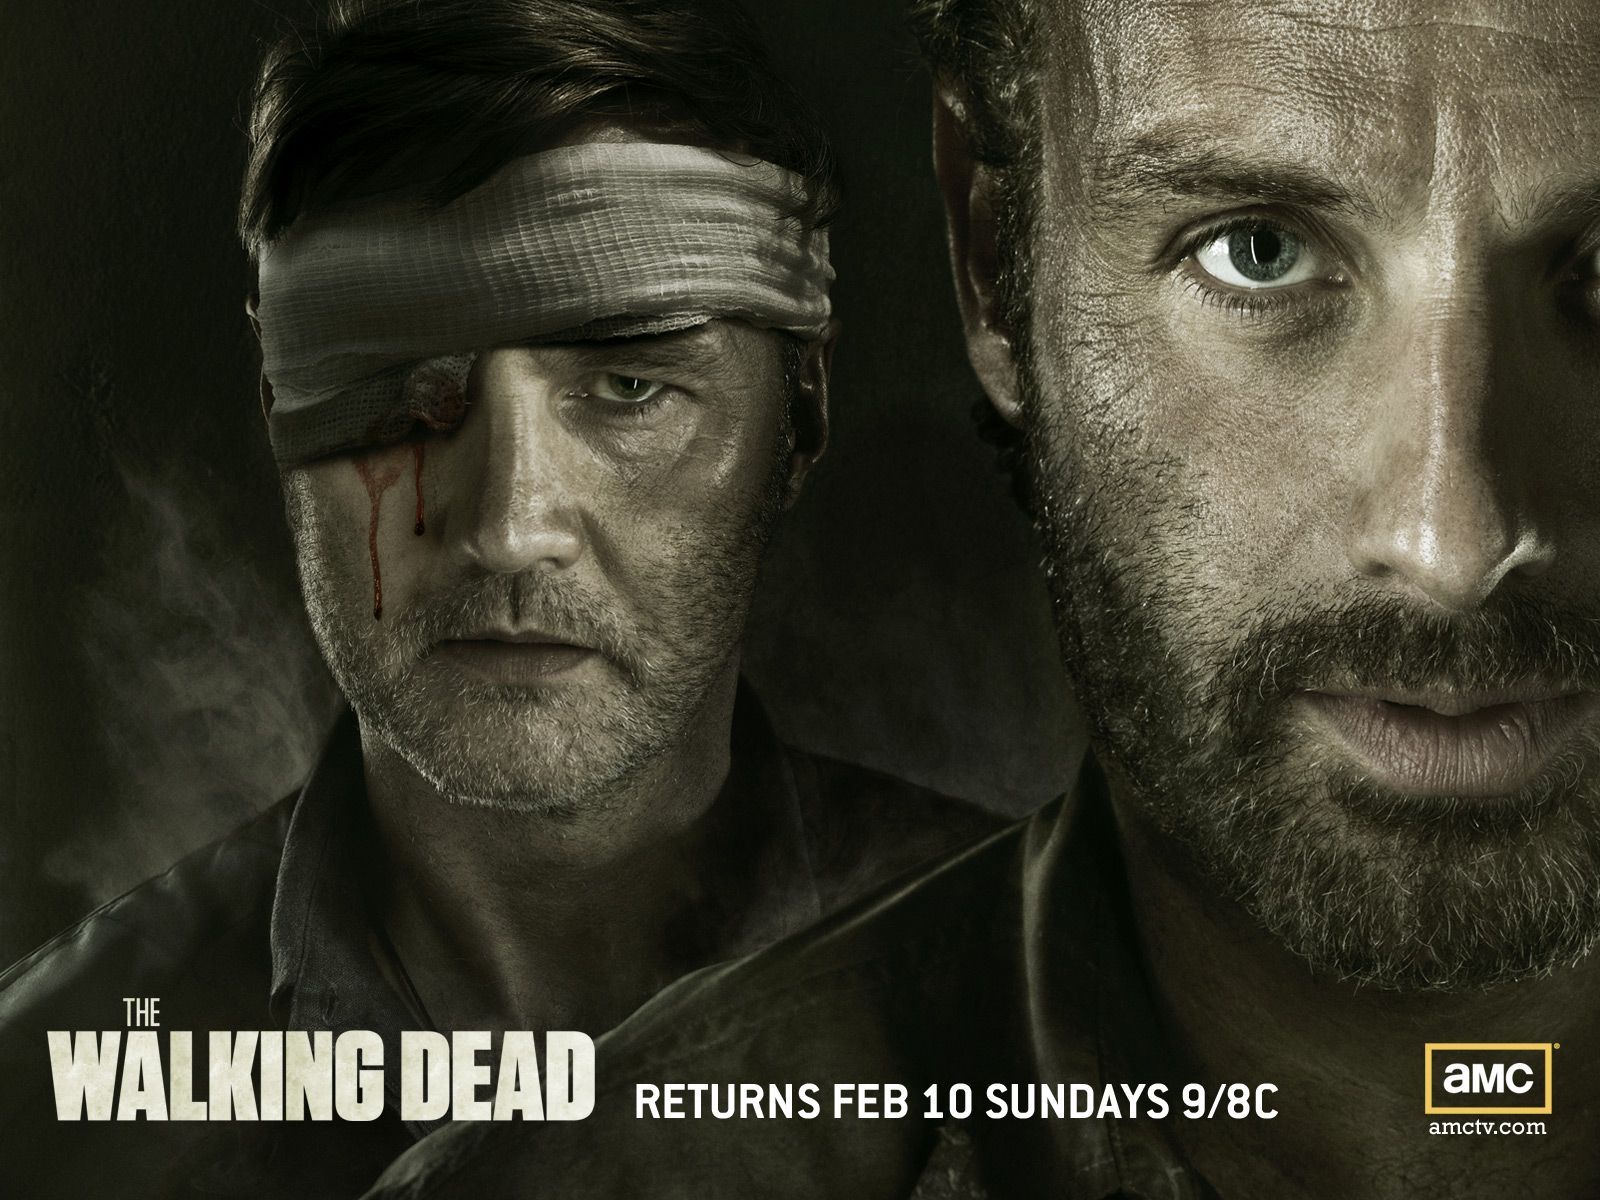 The Walking Dead - The Walking Dead Wallpaper (33489757) - Fanpop